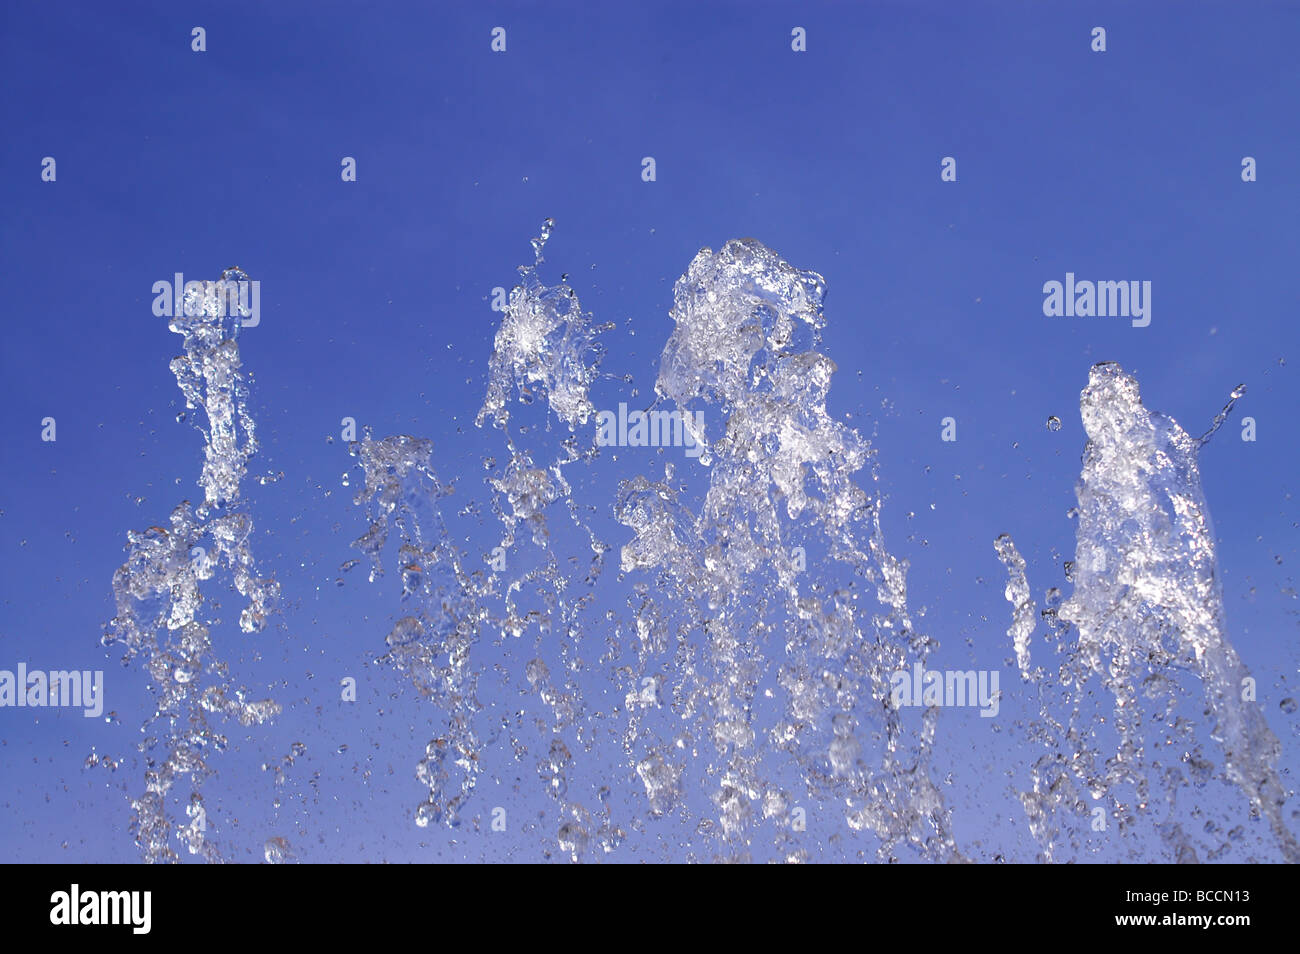 Wasser sprühen in die Luft vor blauem Himmel Stockfoto